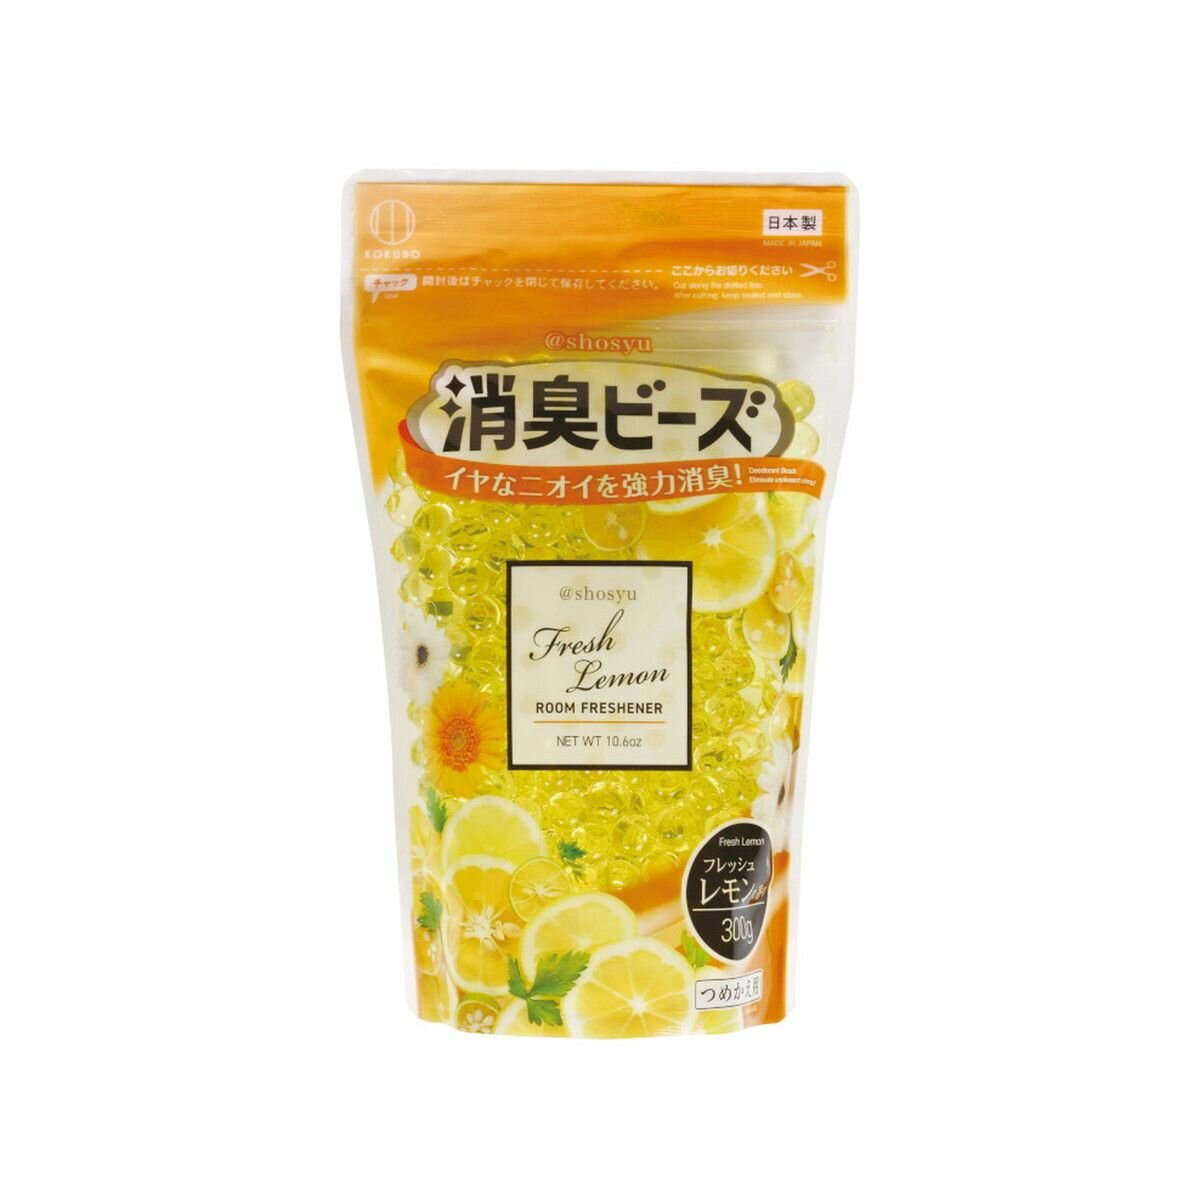 Дезодорант для помещения, с ароматом свежего лимона, сменная упаковка, 300 гр KOKUBO